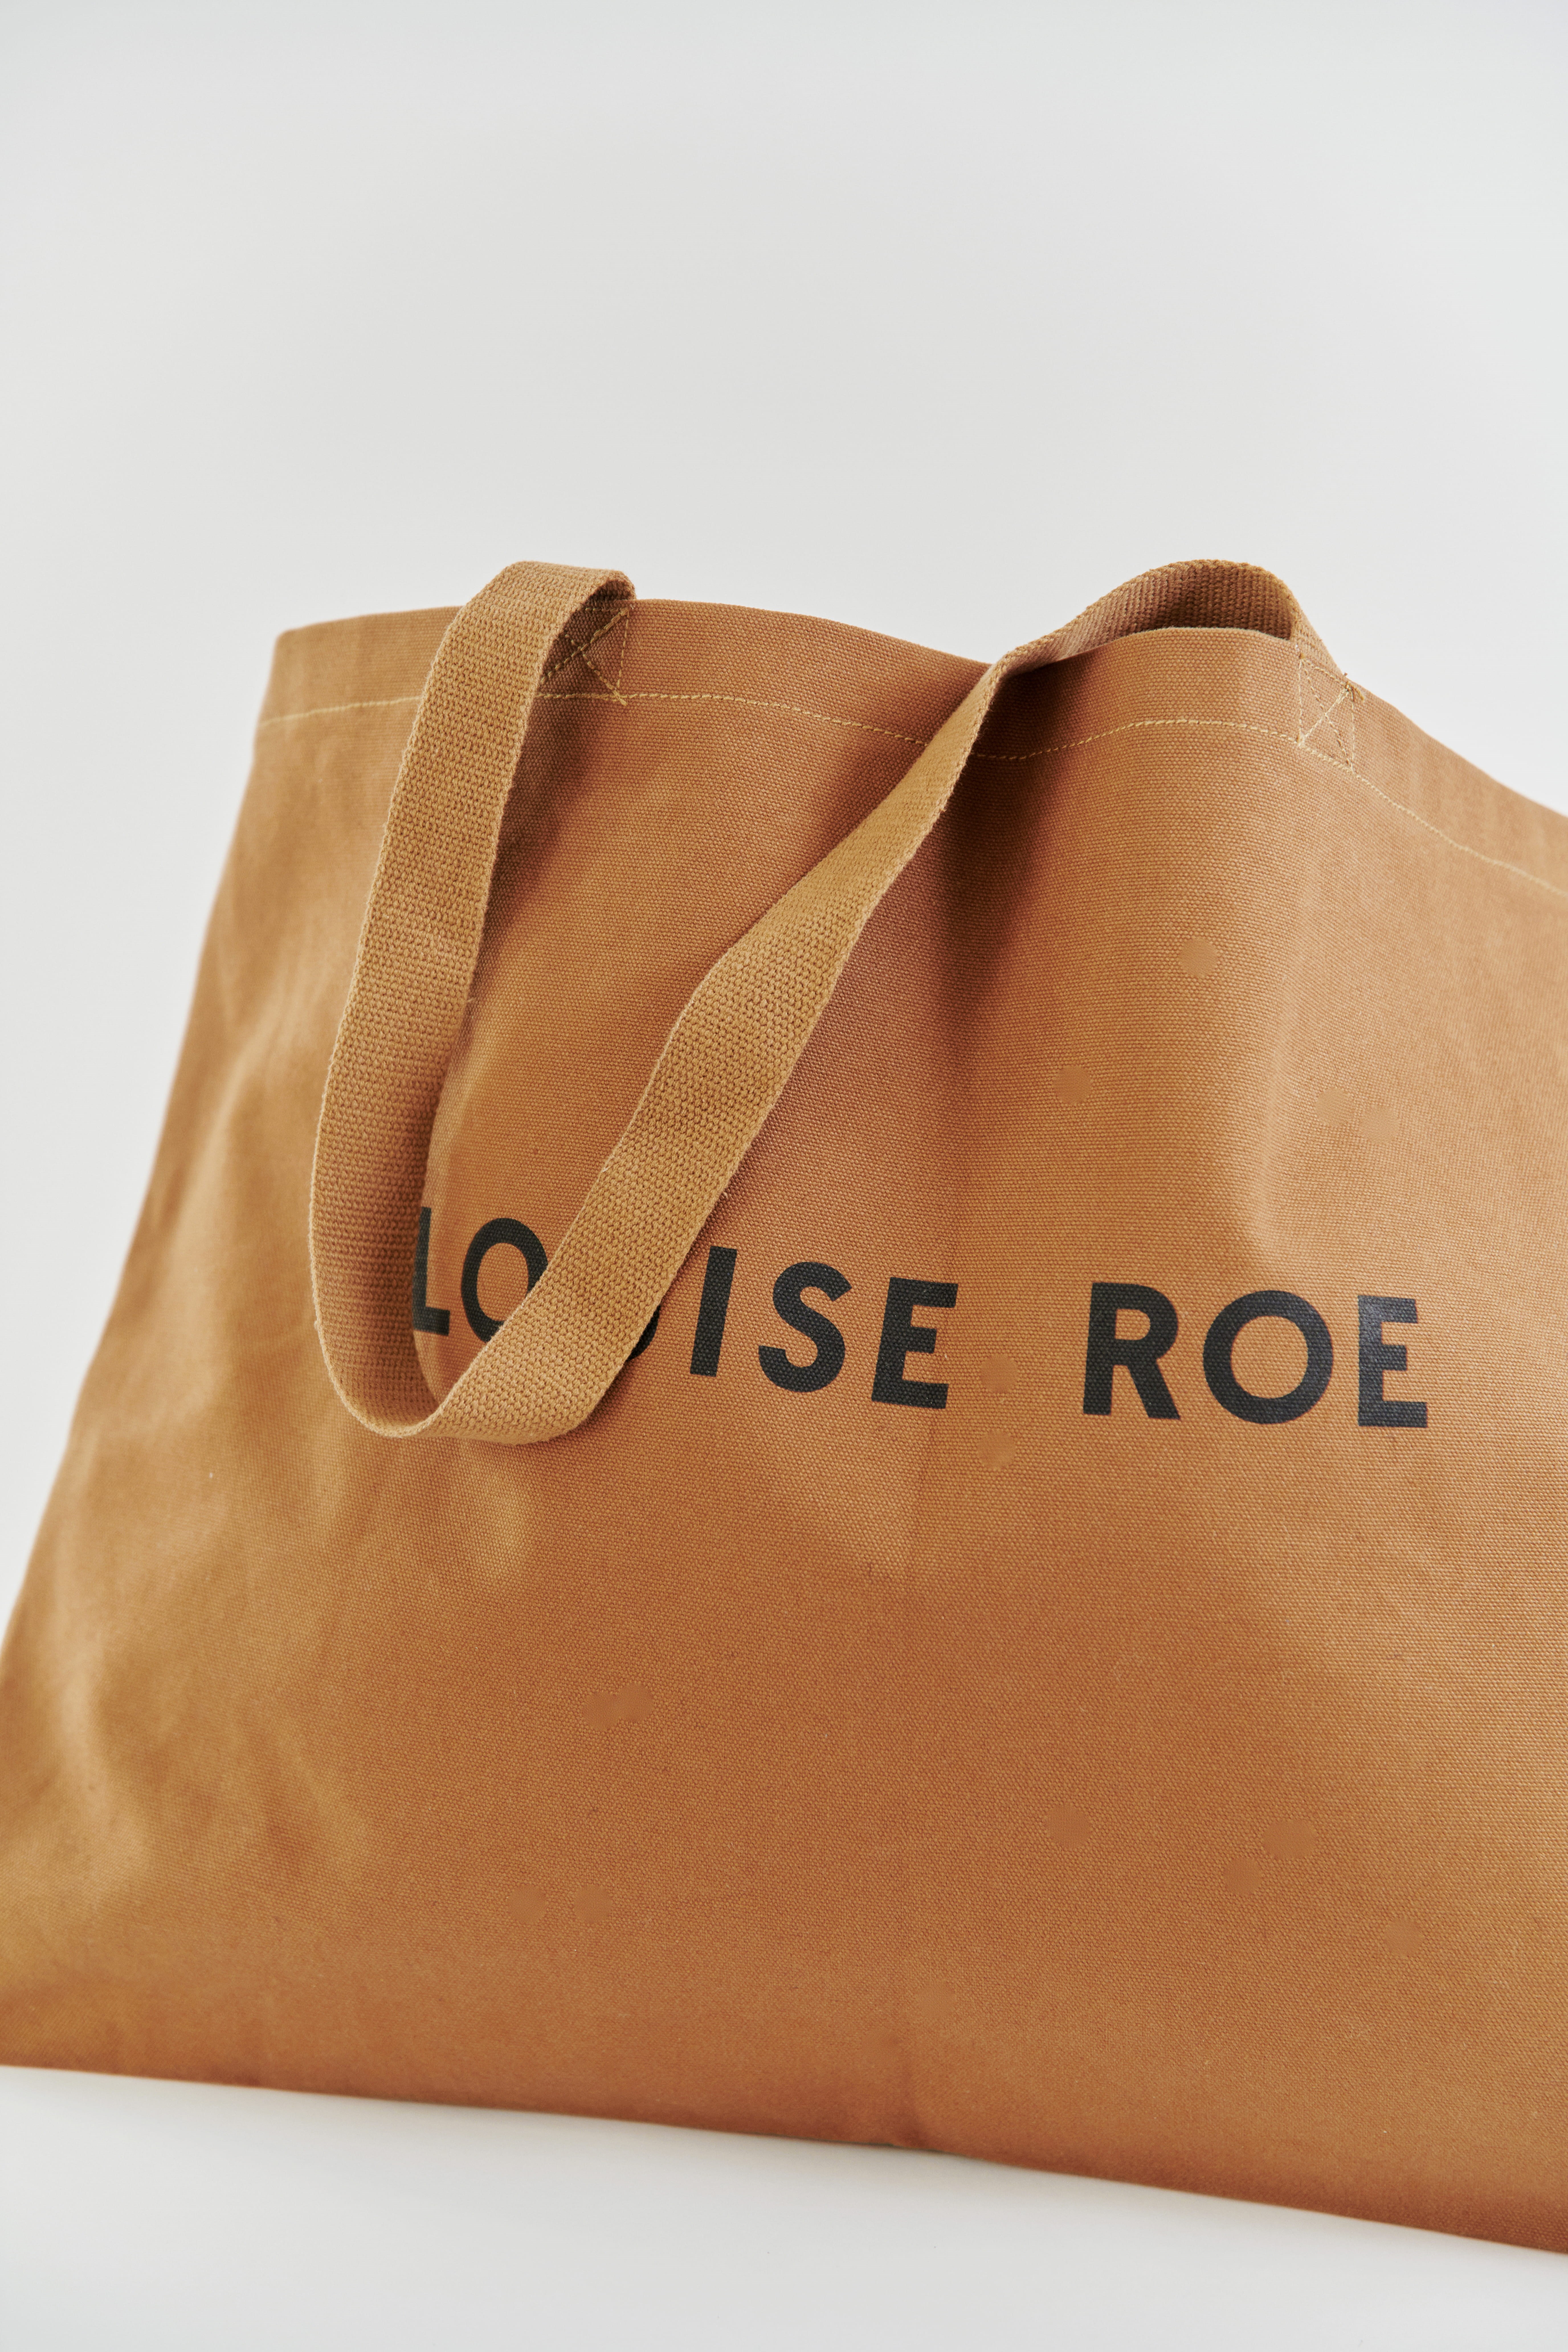 Louise Roe bag